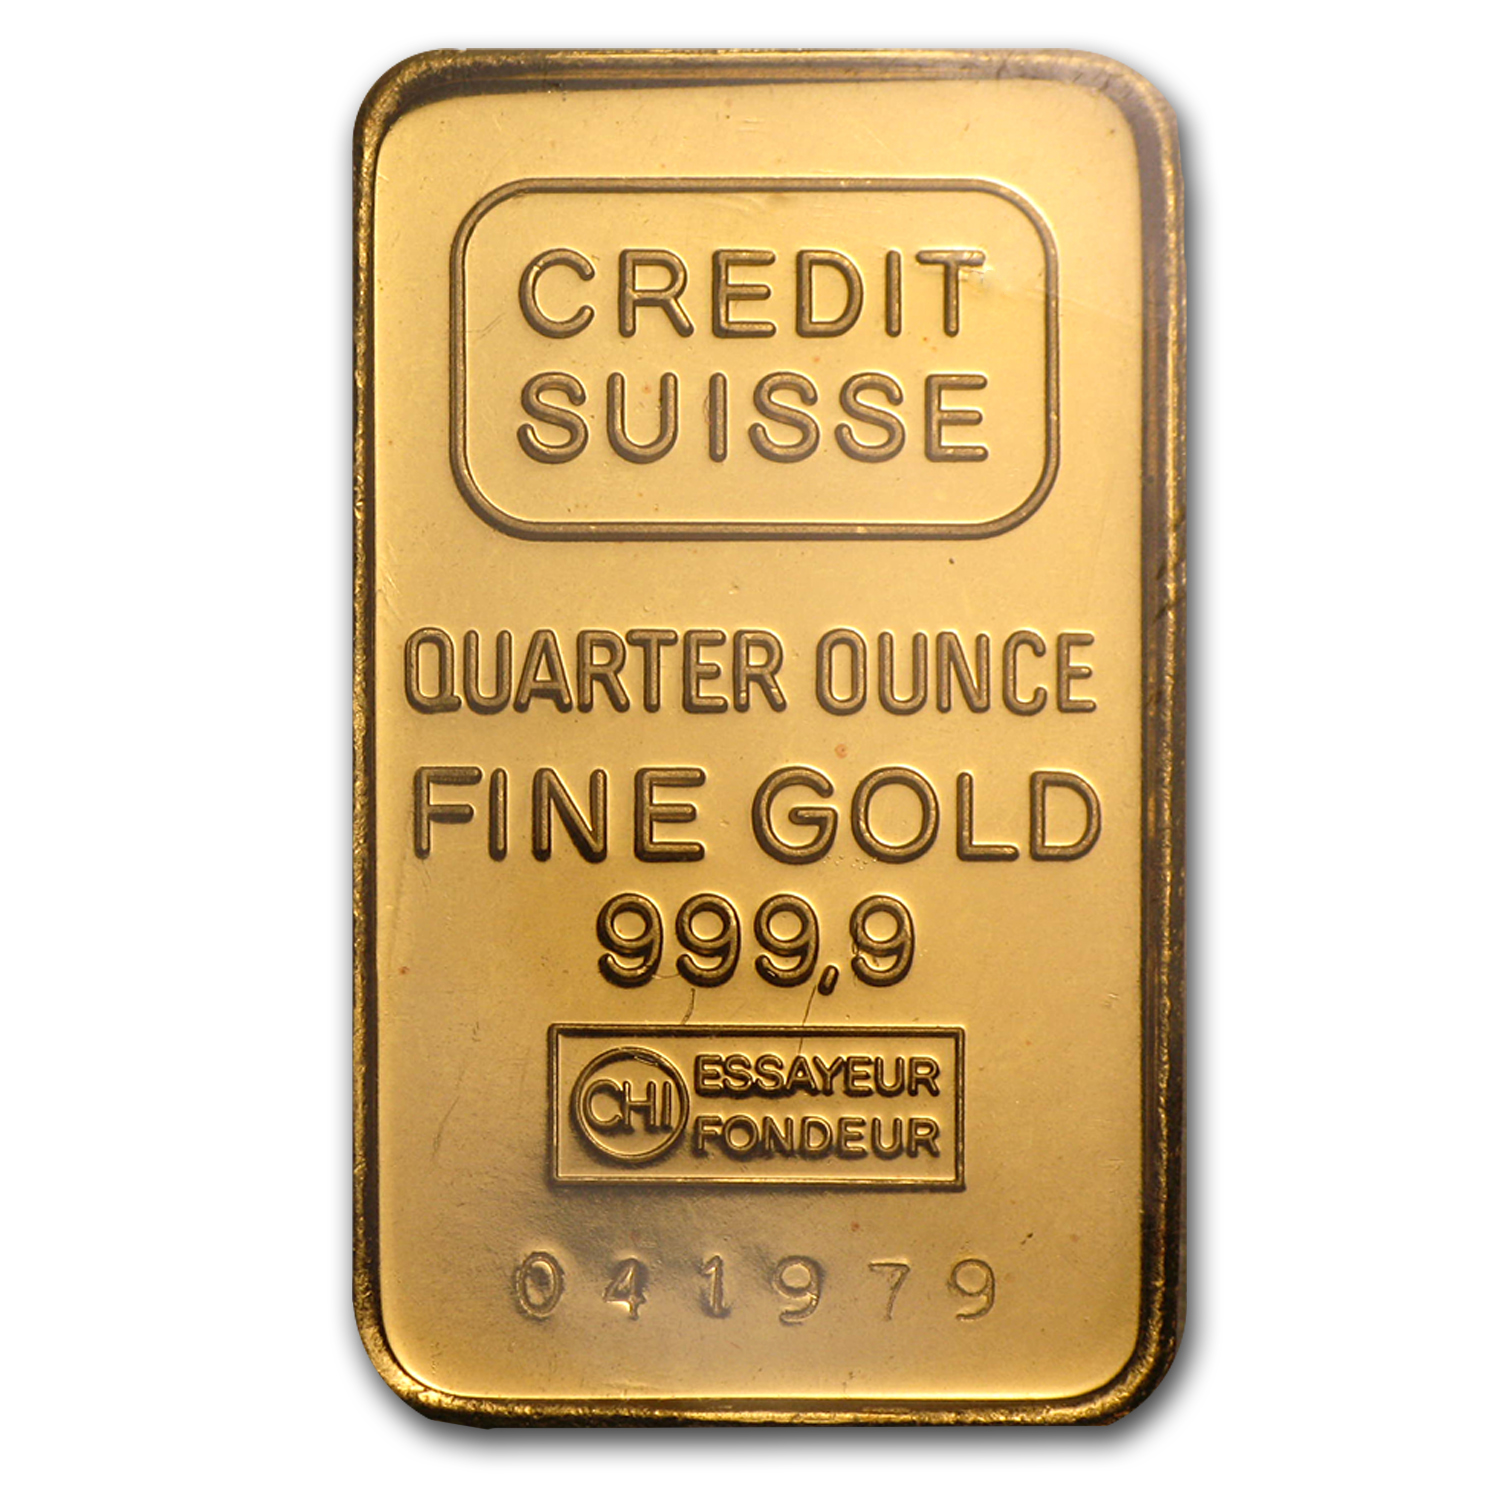 1 oz credit suisse gold bar 9999 fine